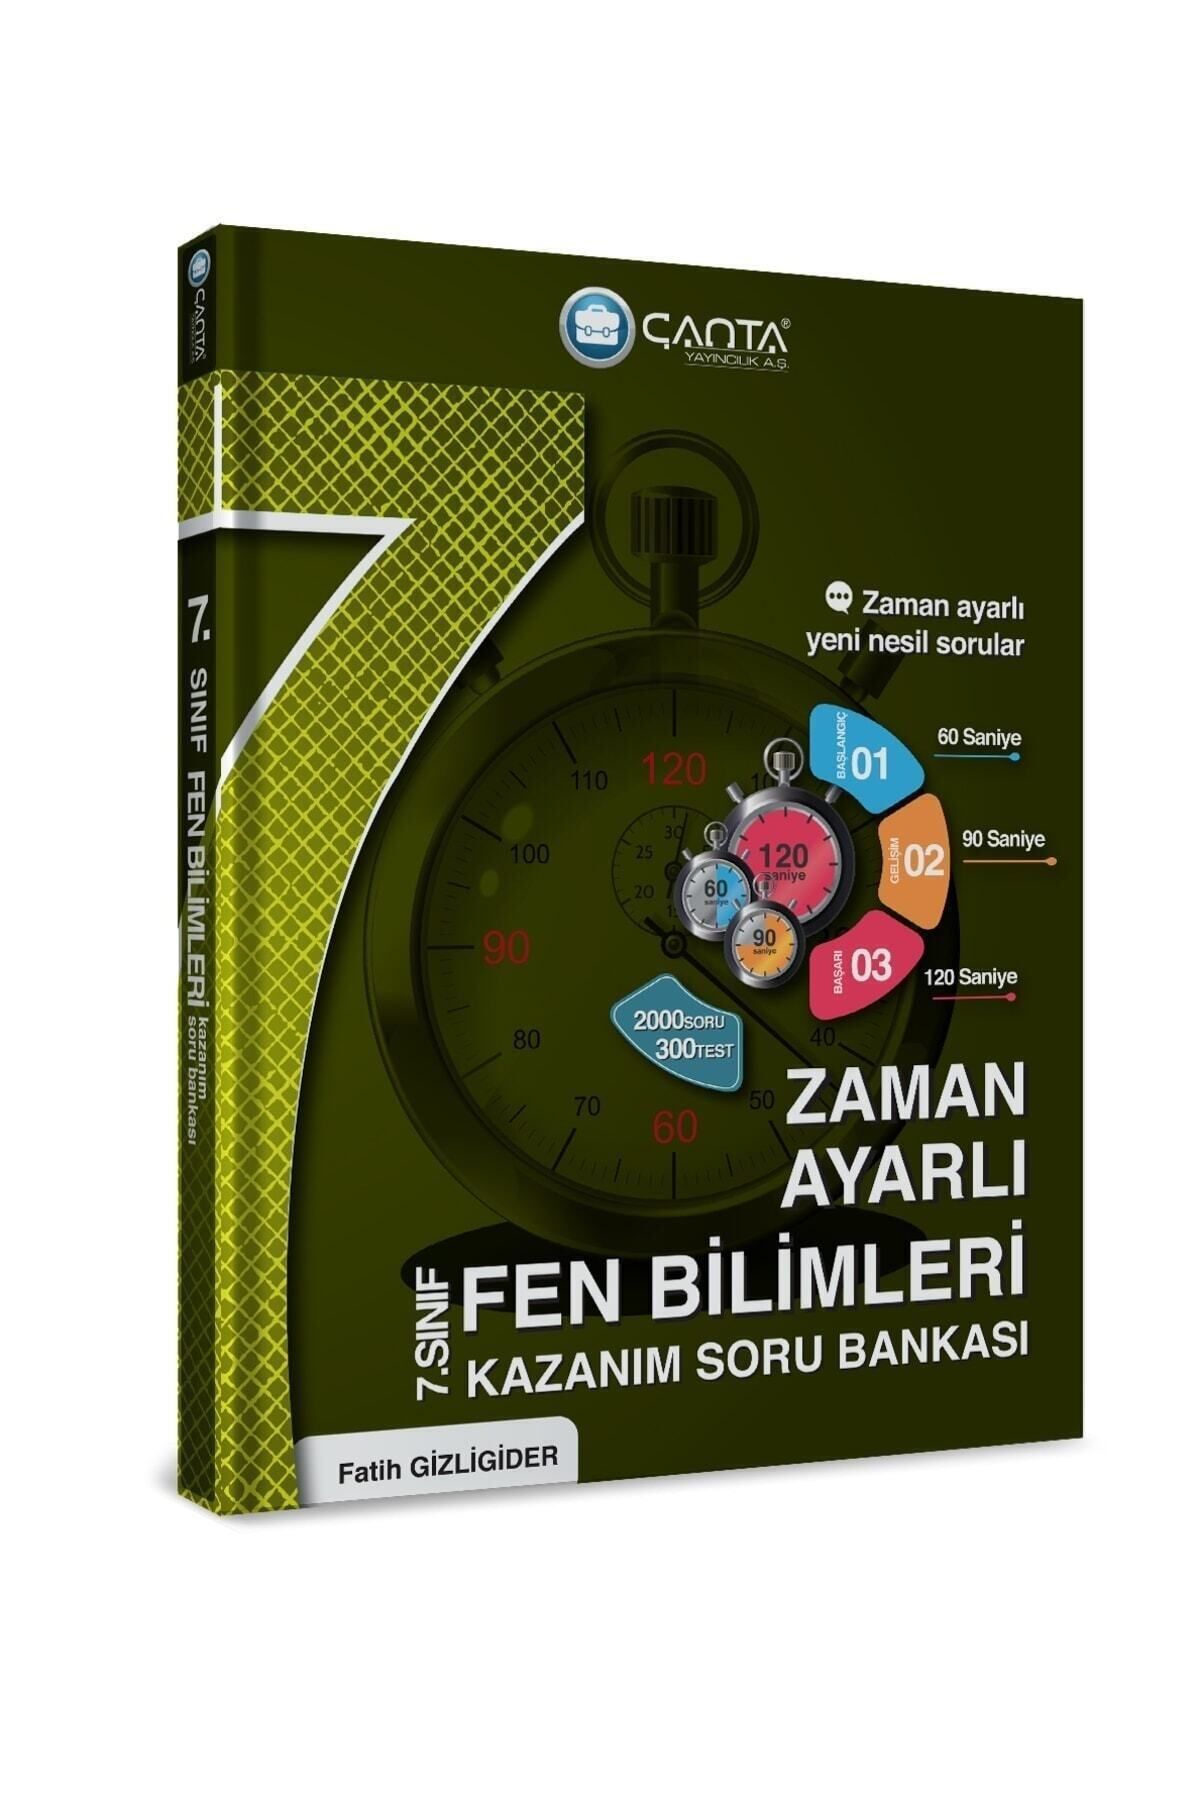 Çanta Yayınları Çanta Yayınları 7 Sınıf Fen Bilimleri Zaman Ayarlı Kazanım Soru Bankası